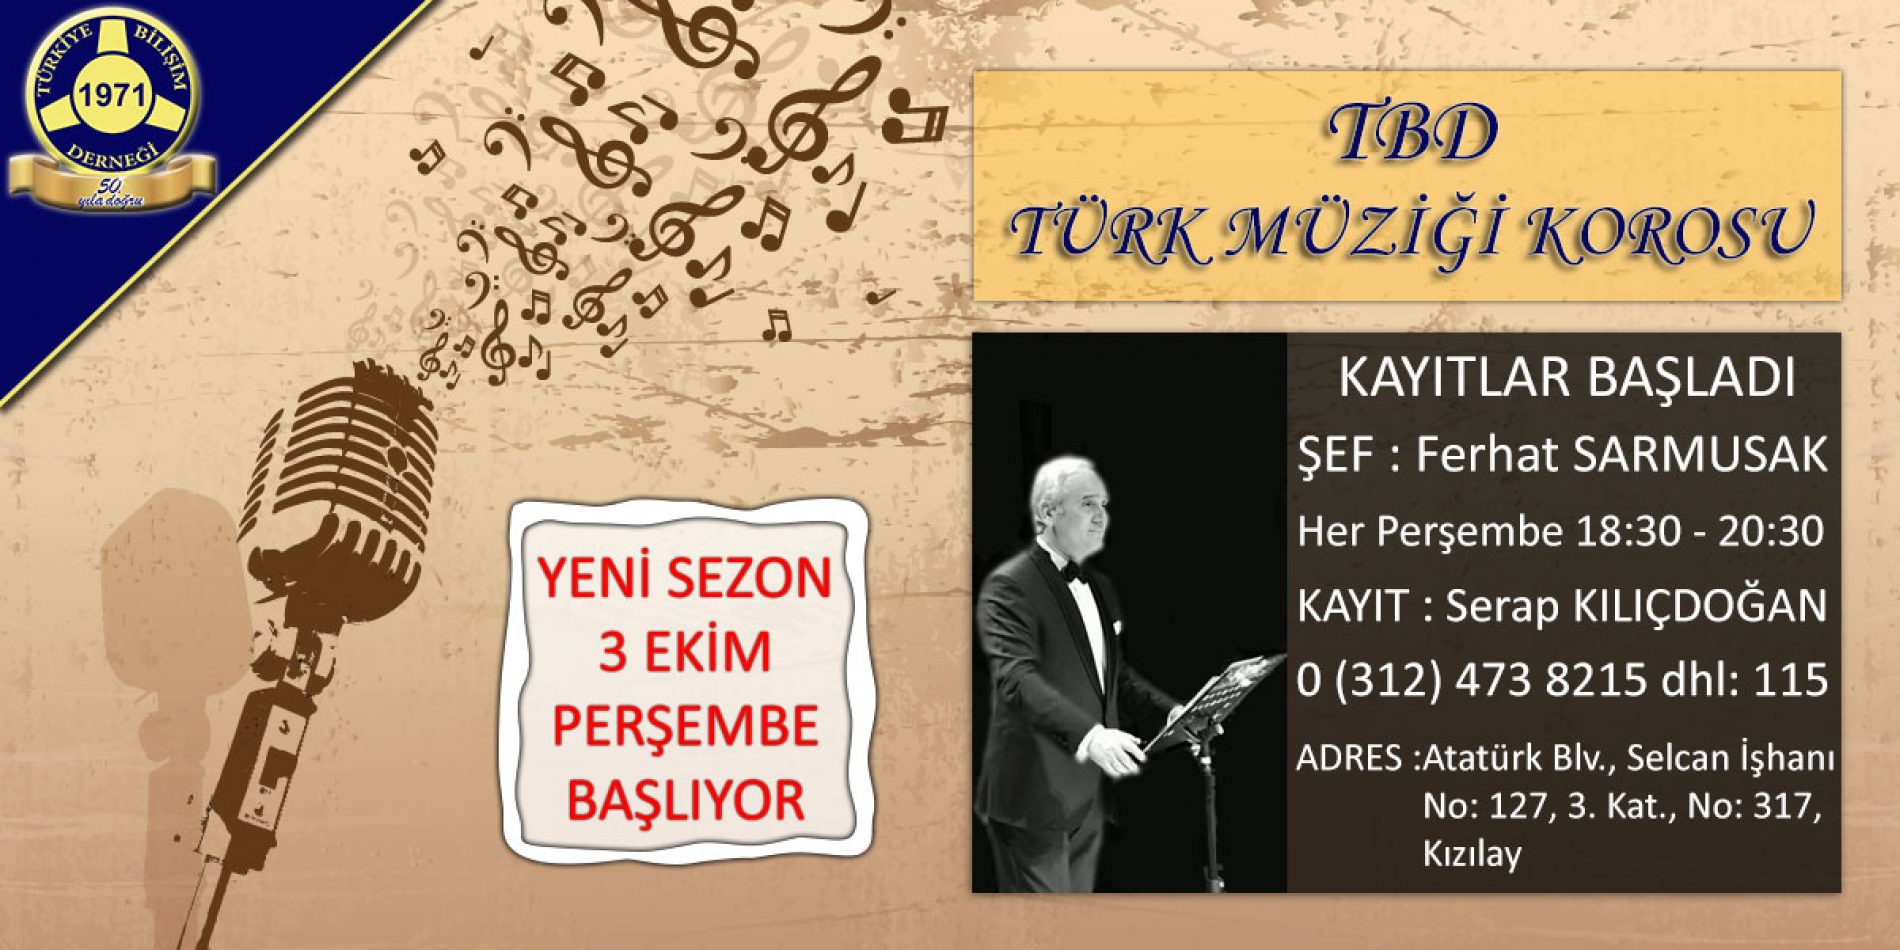 TBD Türk Müziği Korosu Kayıtlar Başladı